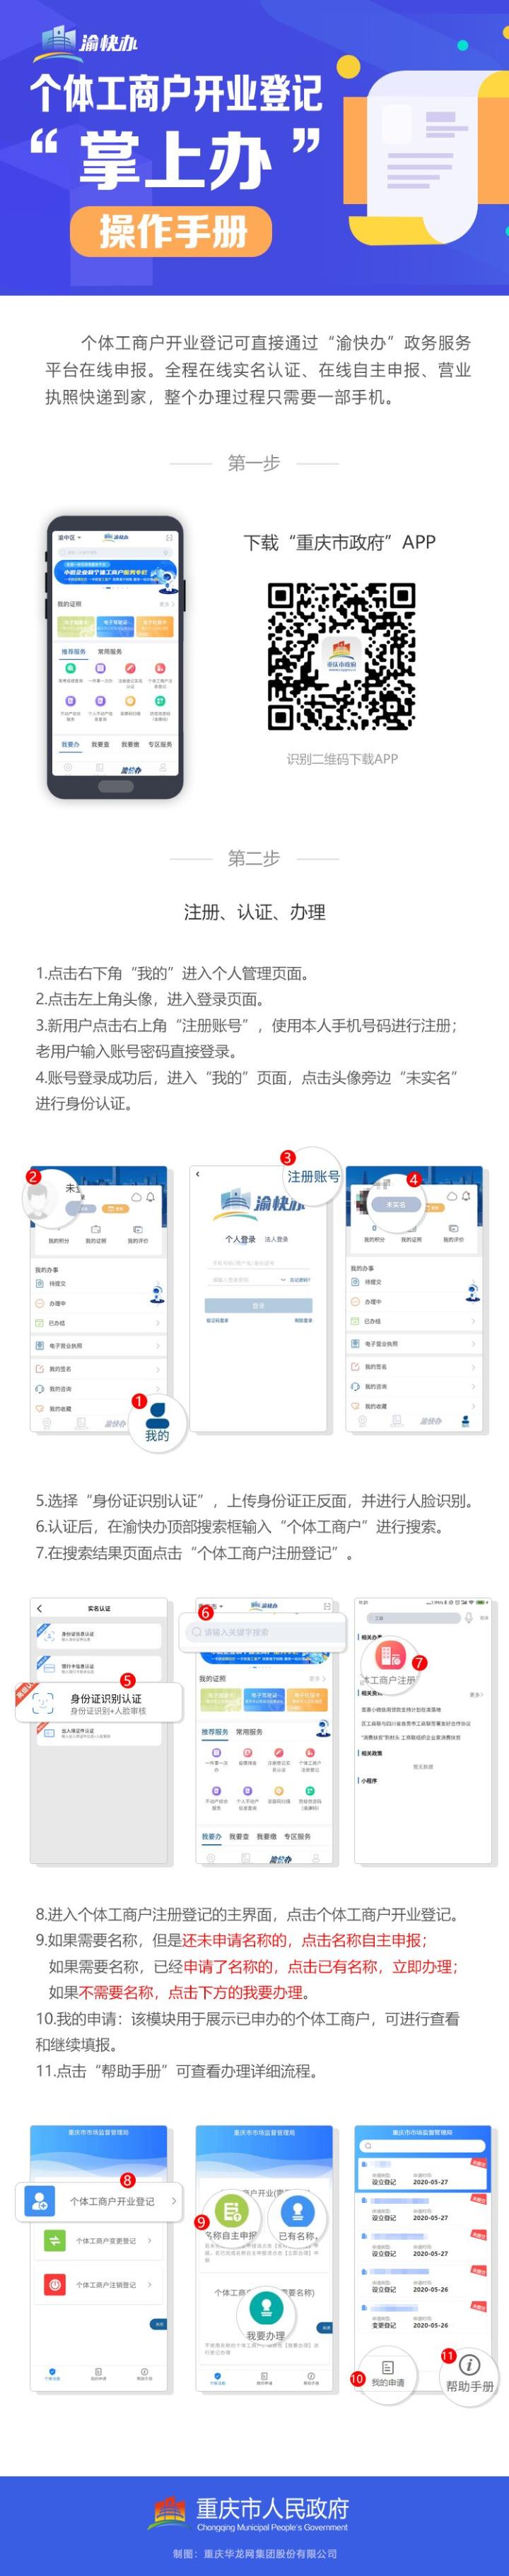 重庆市个体工商户登记注册流程